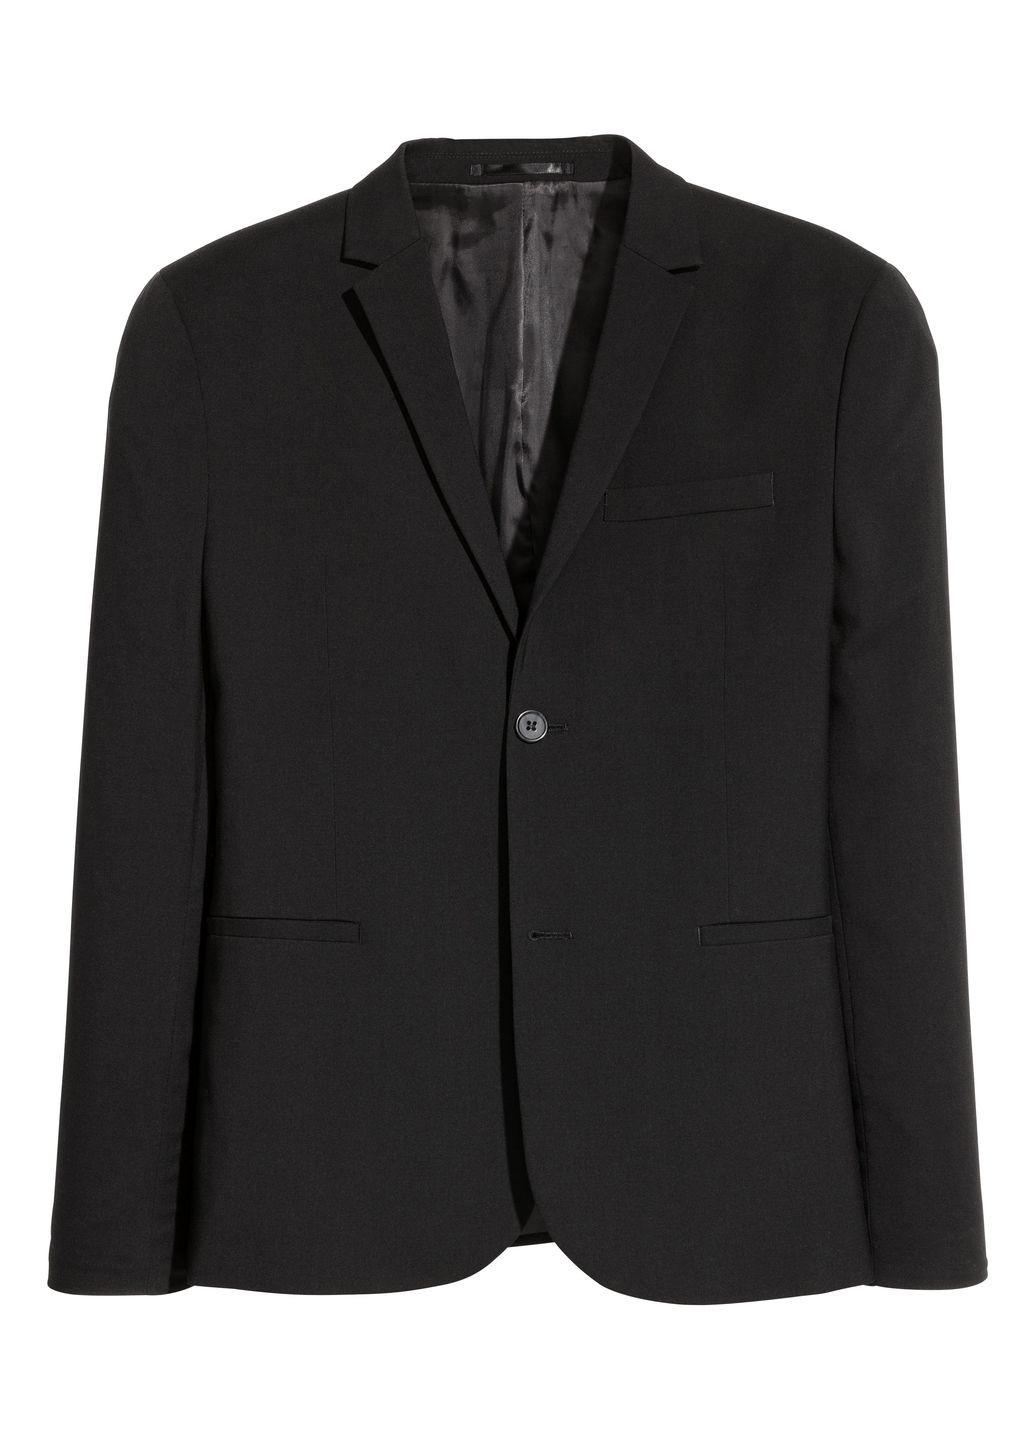 Пиджак H&M однотонный чёрный кэжуал полиэстер, вискоза